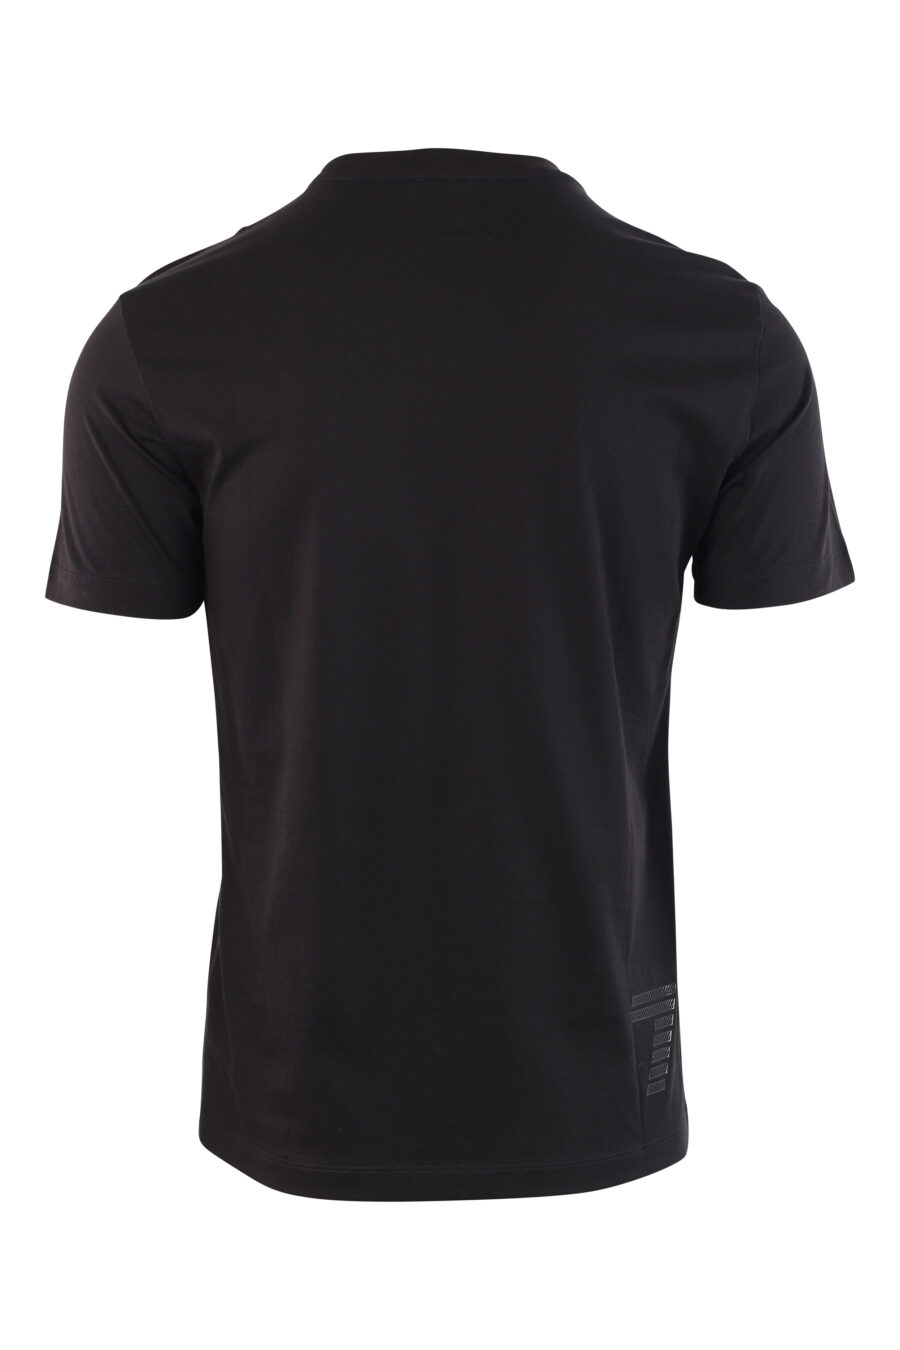 Camiseta negra con maxilogo plateado de goma - IMG 3791